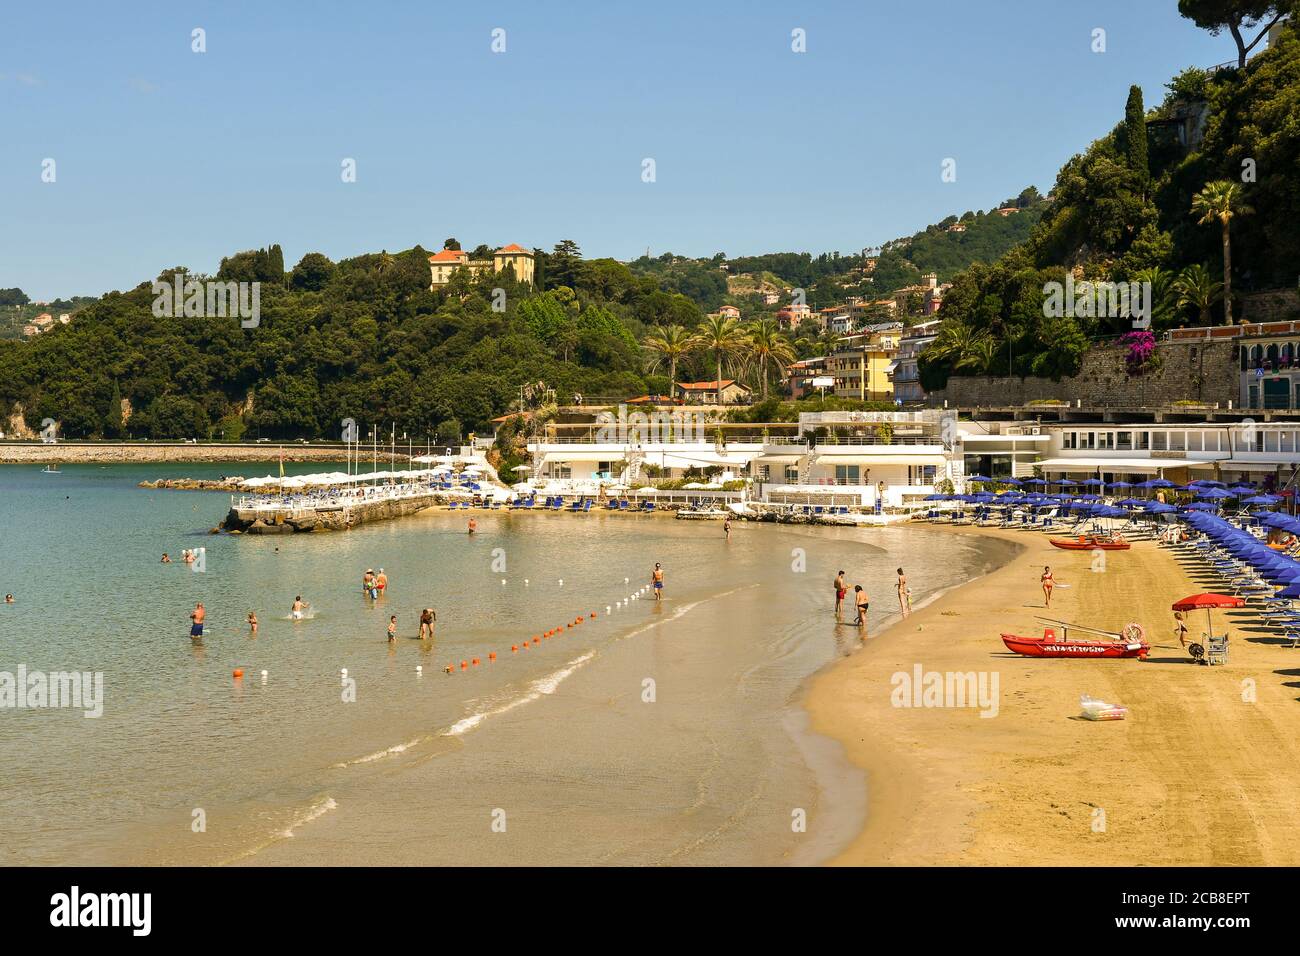 Vista elevata di una spiaggia sabbiosa con vacanzieri nelle onde della riva e di una collina boscosa sullo sfondo in estate, Lerici, la Spezia, Italia Foto Stock